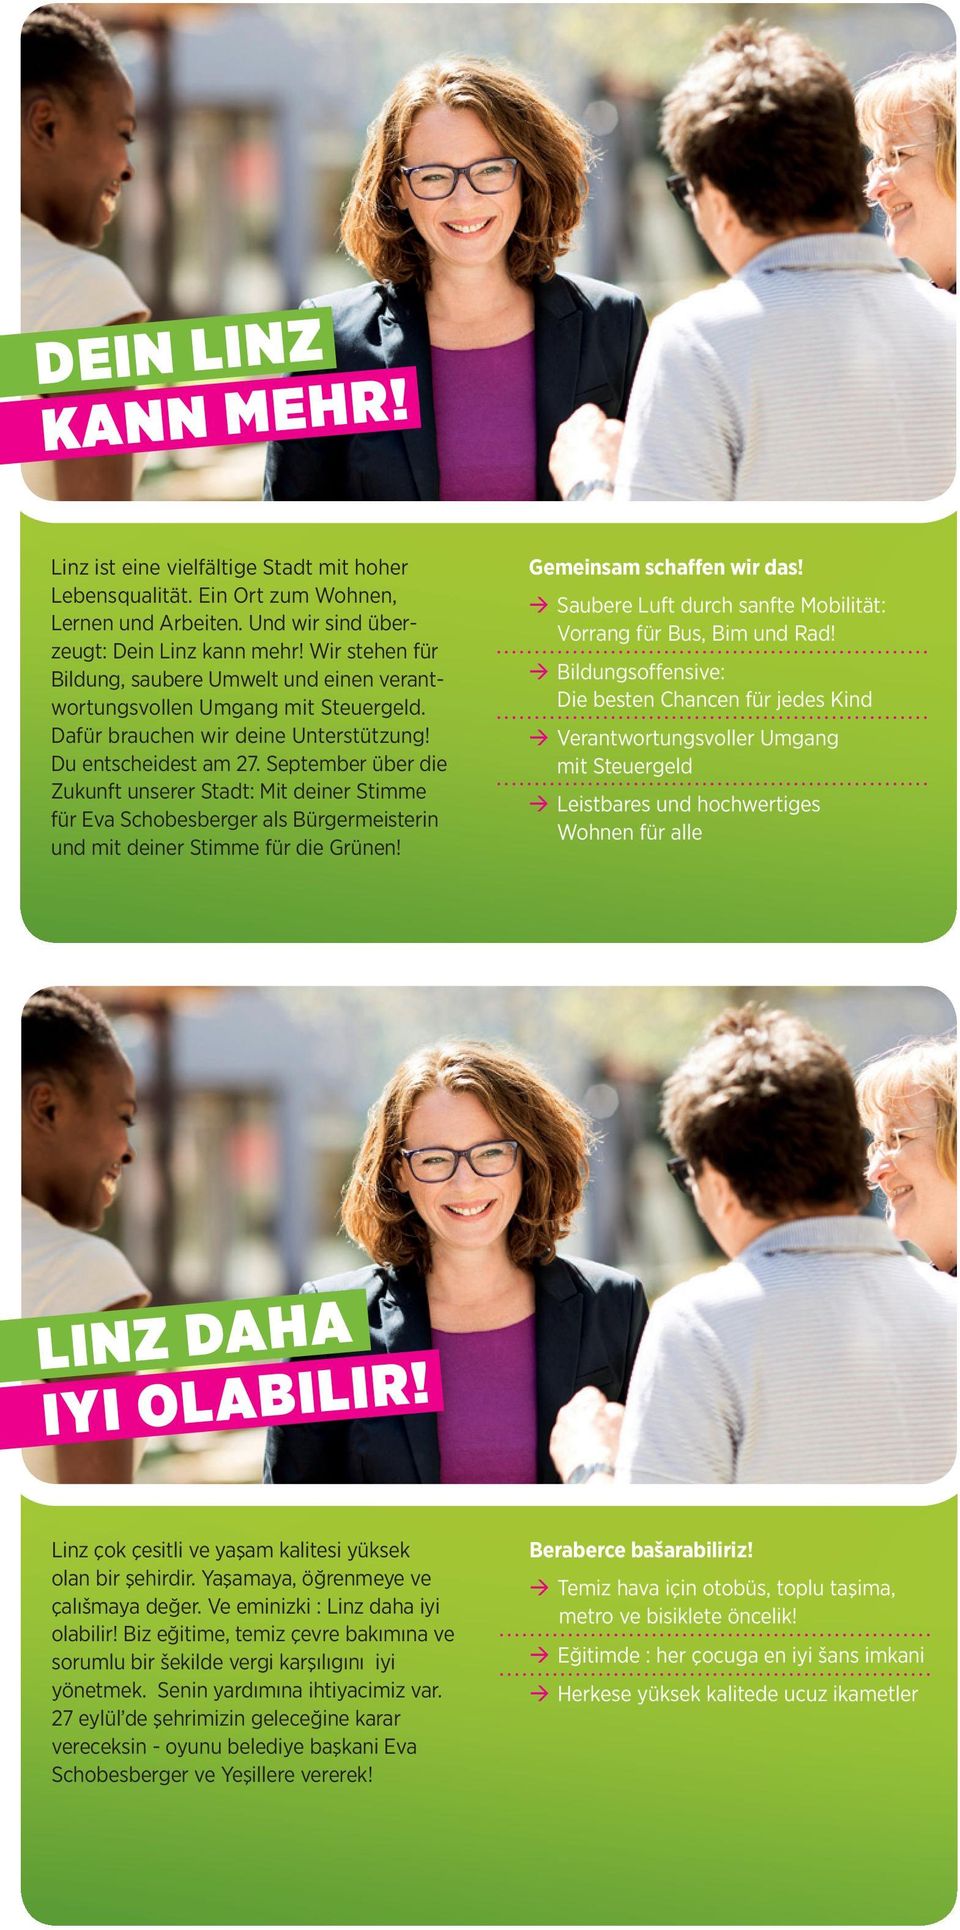 September über die Zukunft unserer Stadt: Mit deiner Stimme für Eva Schobesberger als Bürgermeisterin und mit deiner Stimme für die Grünen! Gemeinsam schaffen wir das!